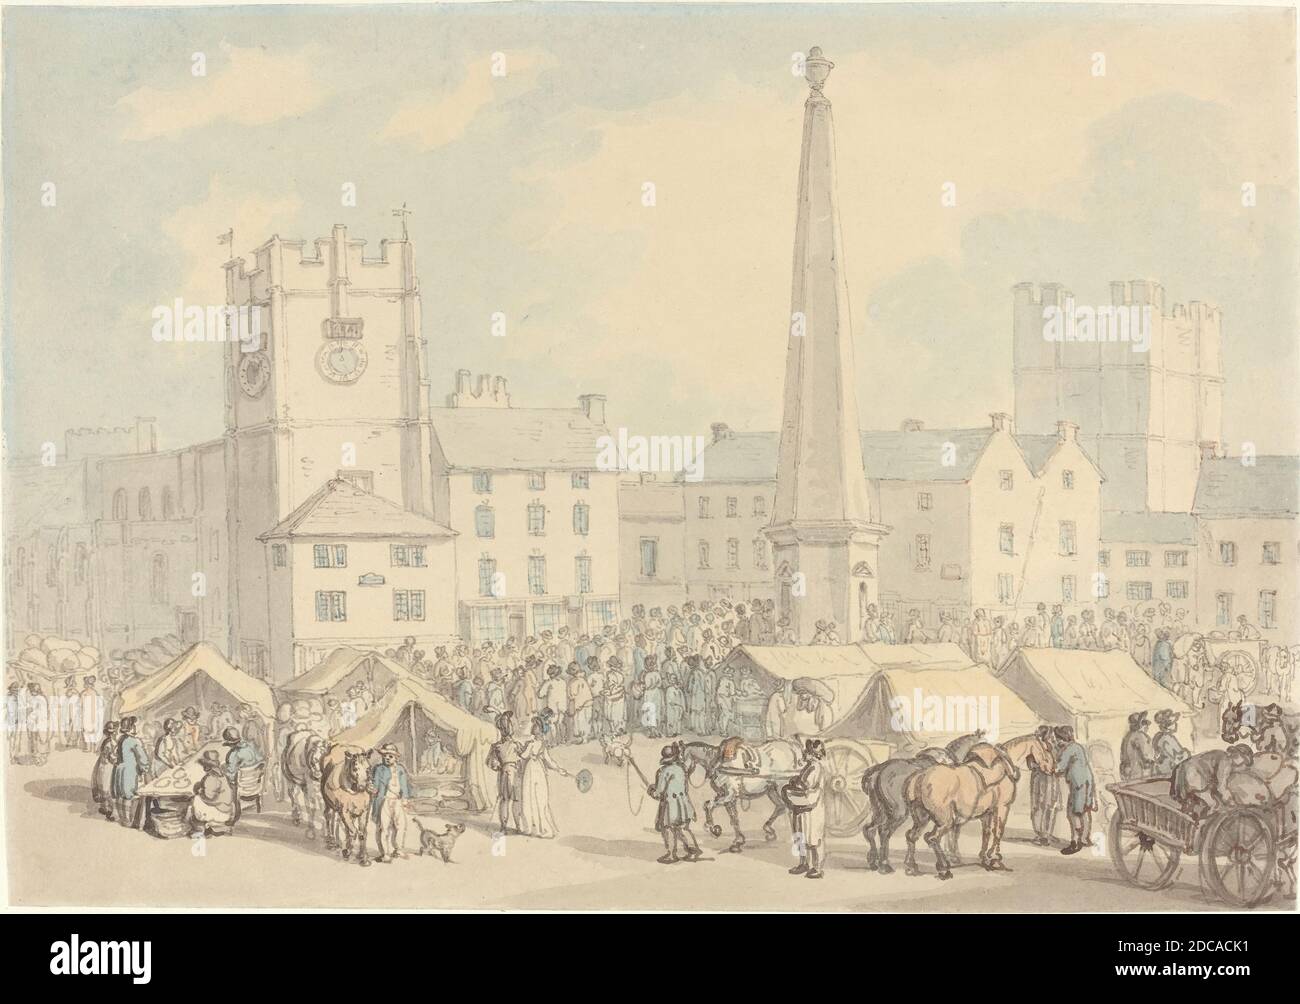 Thomas Rowlandson, (artiste), British, 1756 - 1827, Market Day à Richmond, dans le Yorkshire, ch. 1818, stylo et encre marron et grise avec aquarelle sur graphite sur papier vélin, total : 22.2 x 31.9 cm (8 3/4 x 12 9/16 po Banque D'Images